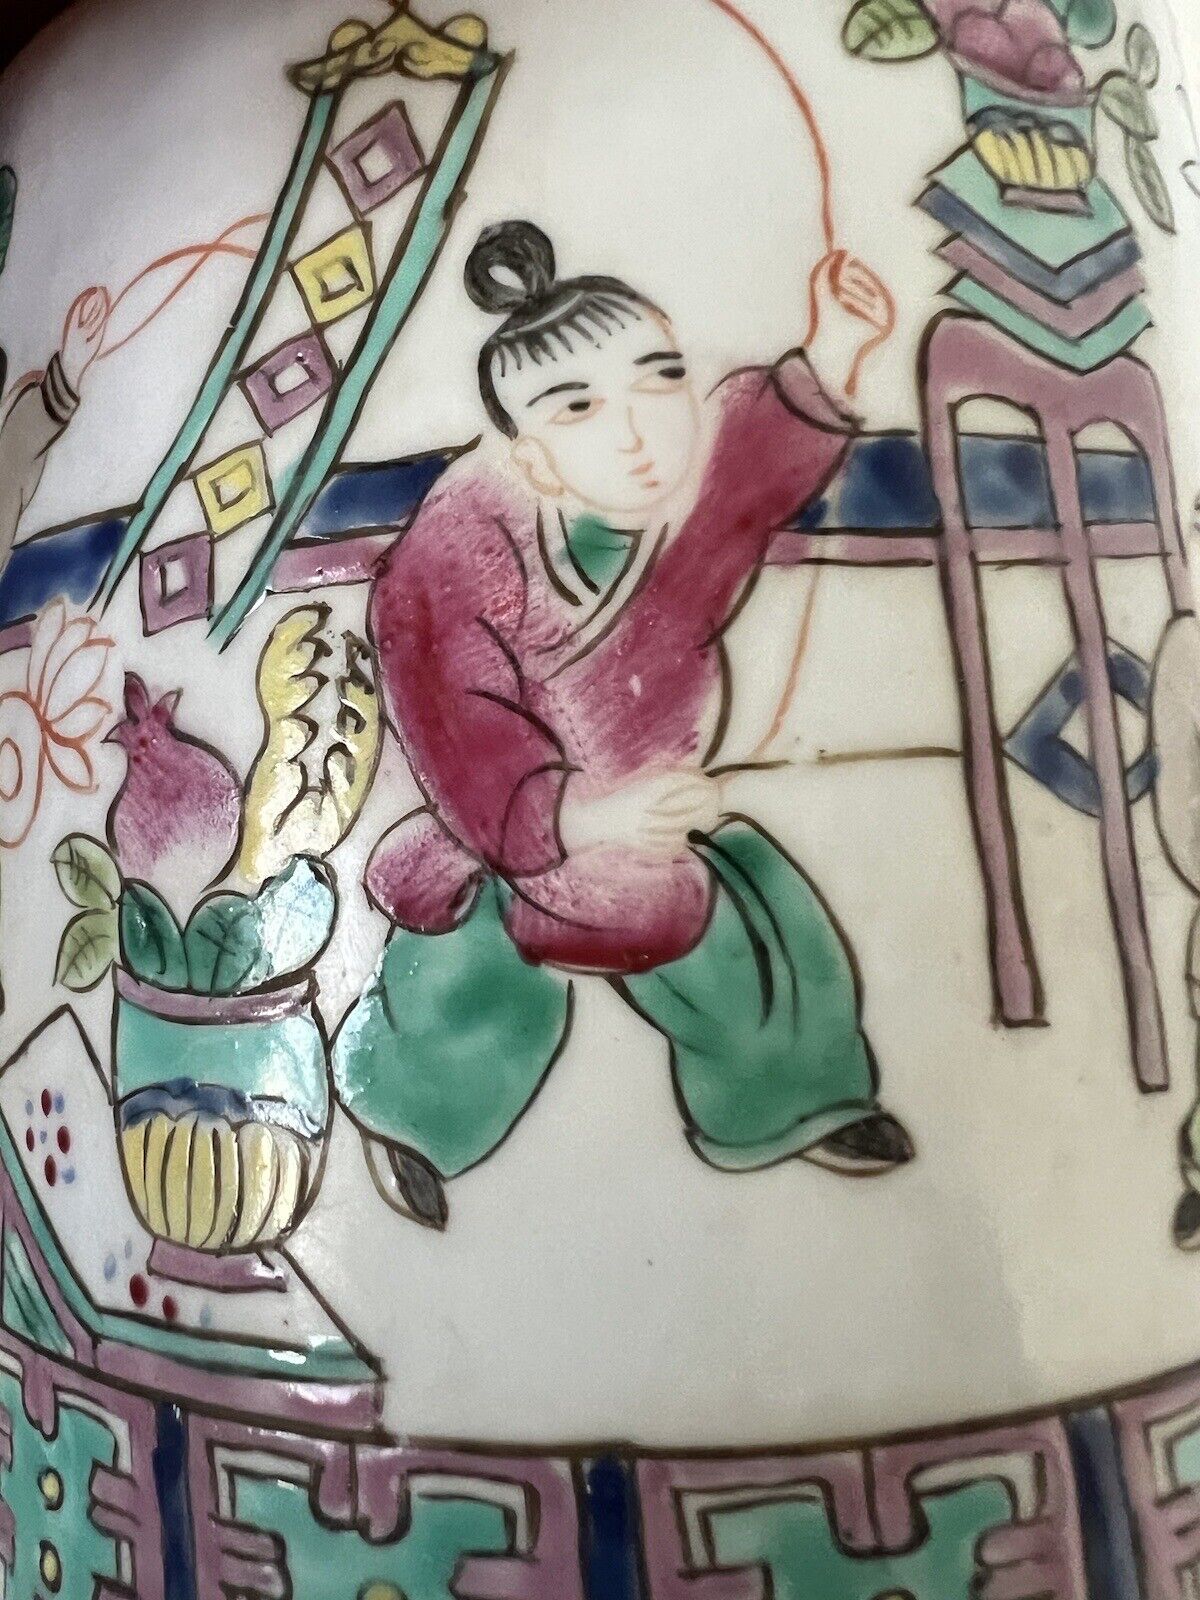 2 Antique Chinese Hand Paint Dragon Children Cylinder Hallmark Famille Jars 6" Без бренда - фотография #15